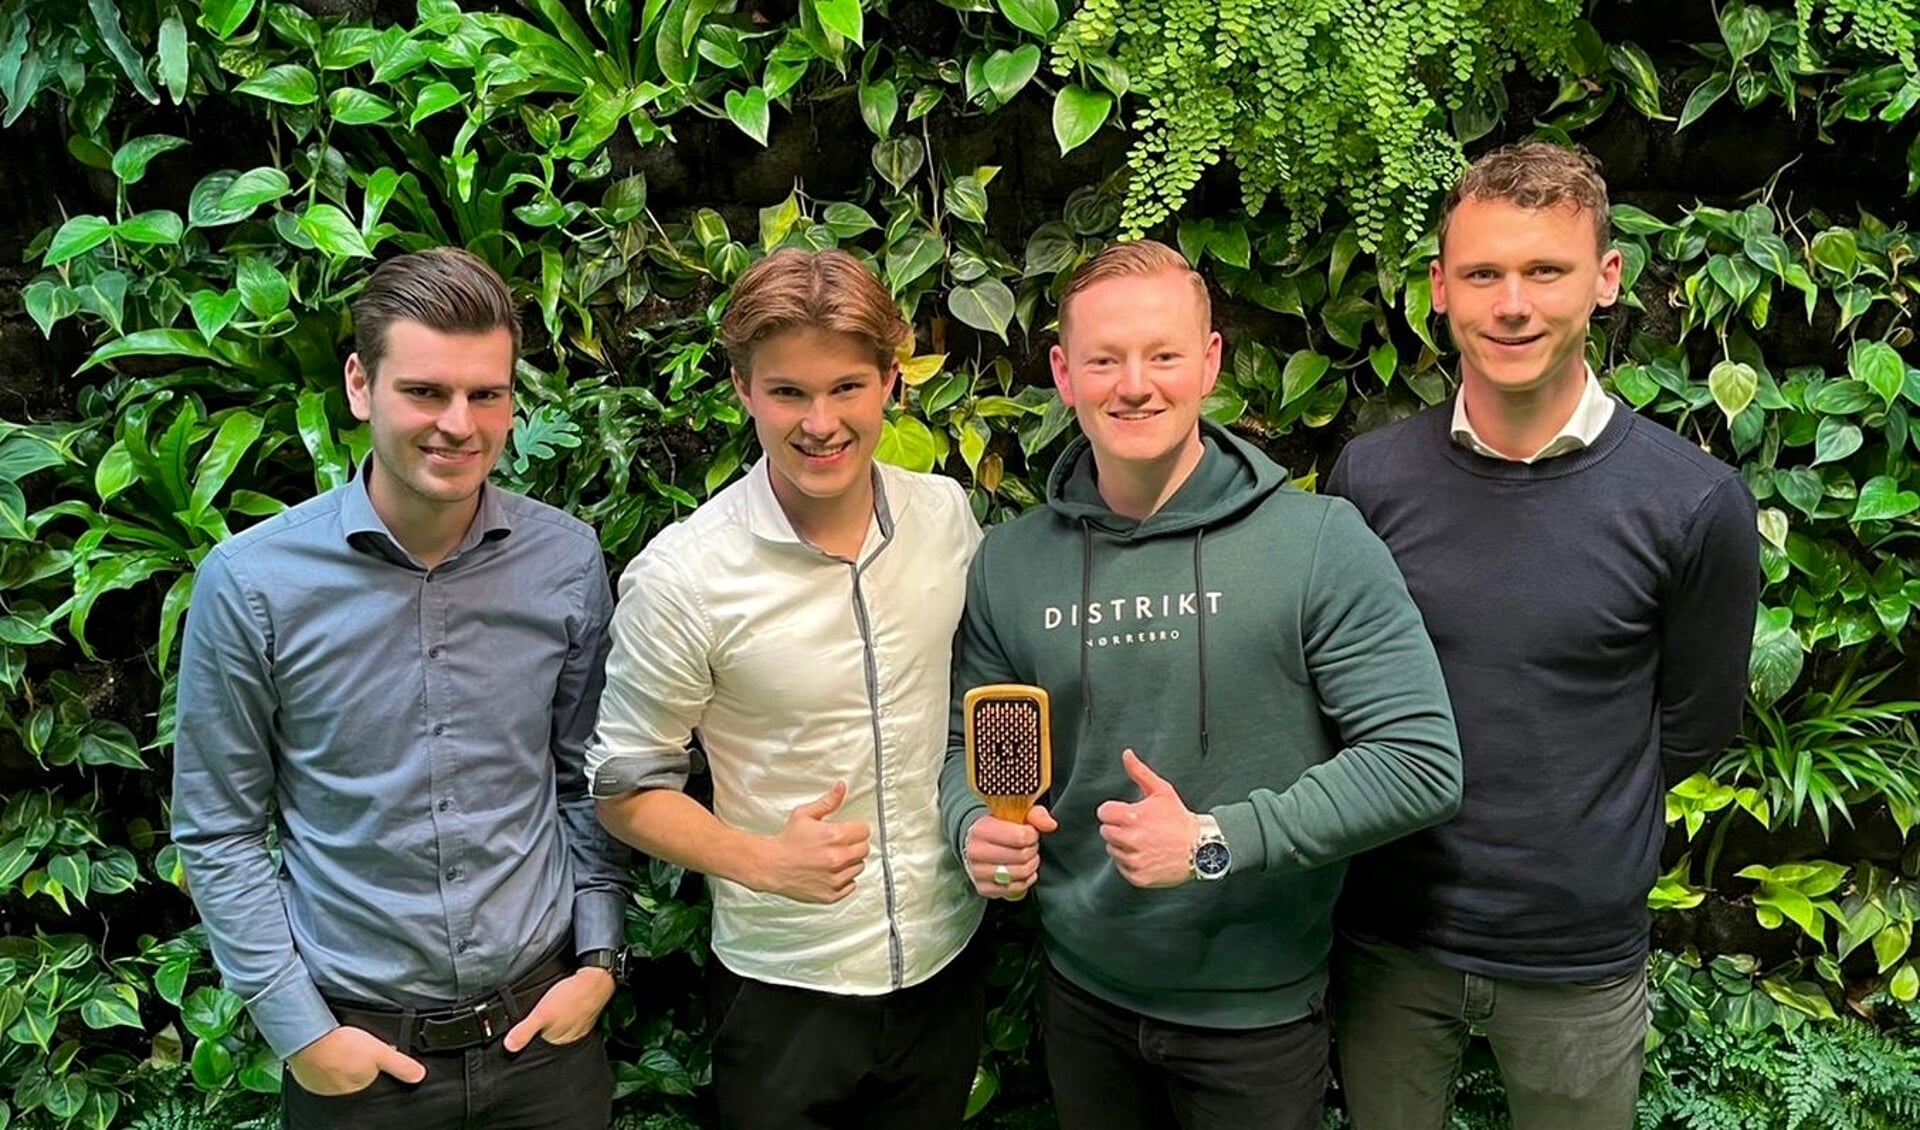 Vlnr. Nick Beereboom, Jesper Laan, Tim Gorter en Jesse Heemskerk, studenten aan de Hogenschool Inholland, lanceerden hun eigen product: de Brushy.